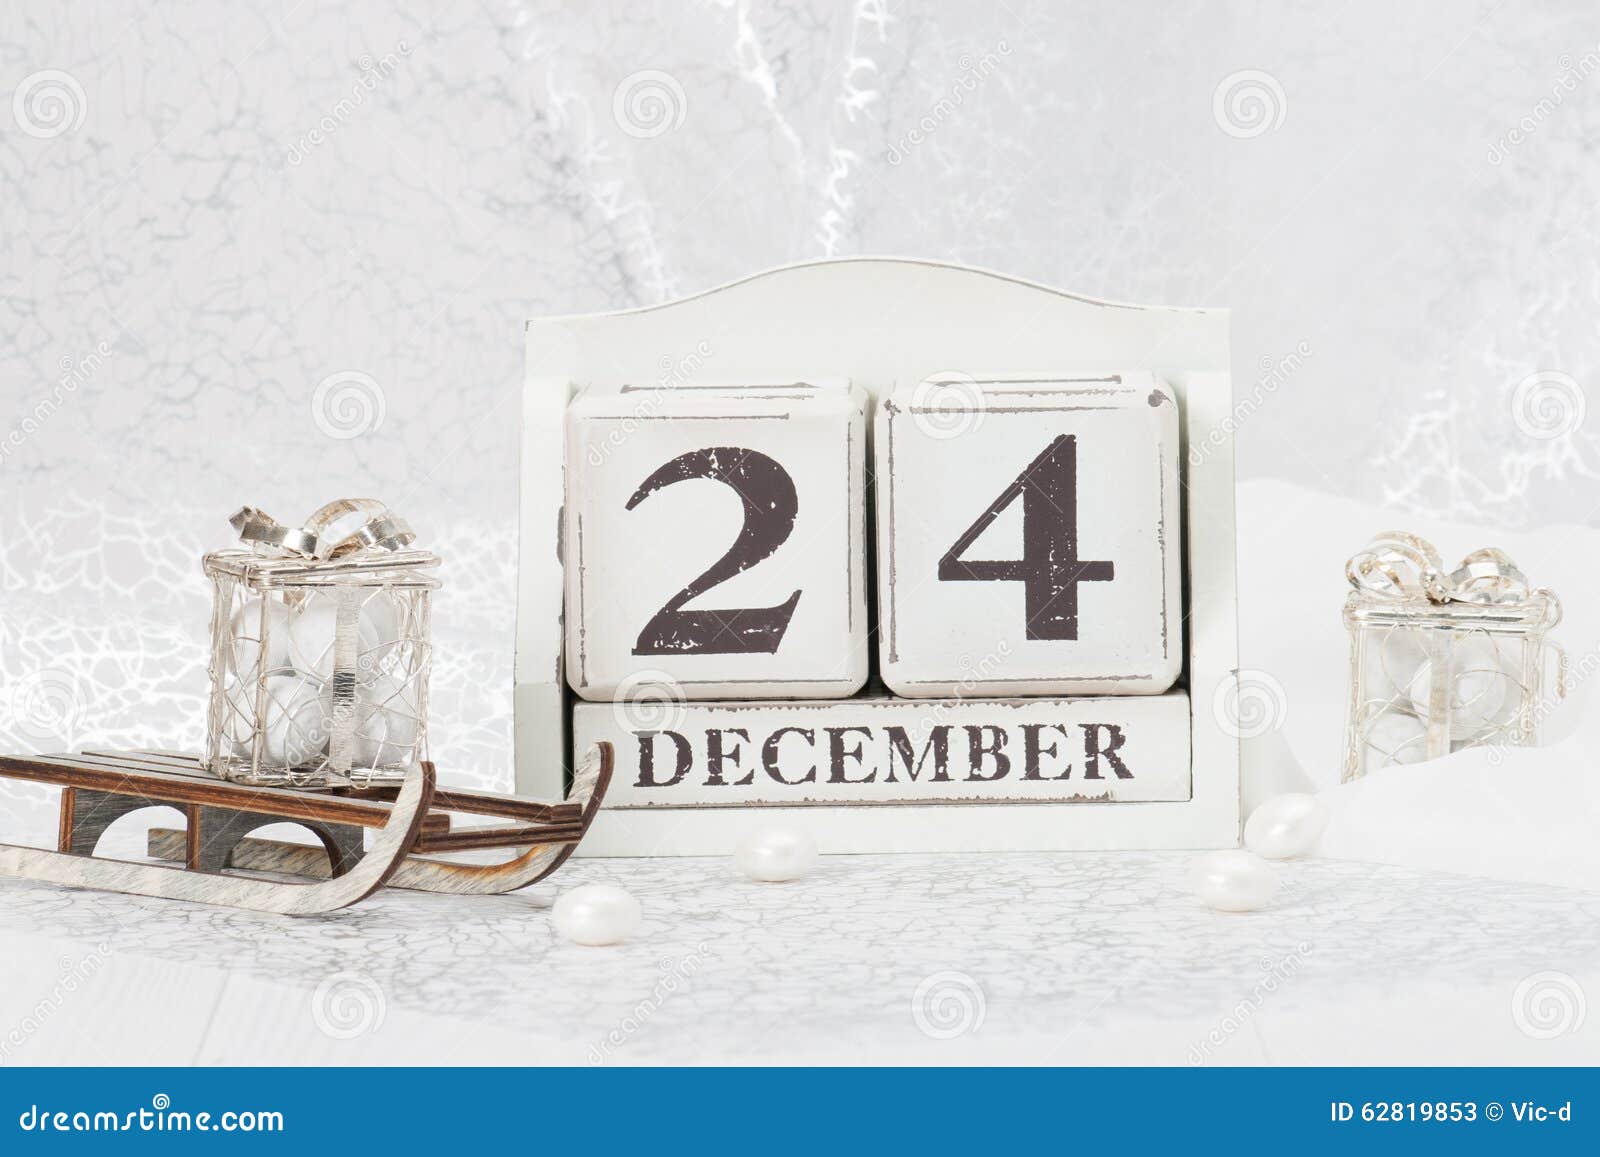 La Navidad Eve Date on Calendar 24 De Diciembre Imagen de archivo